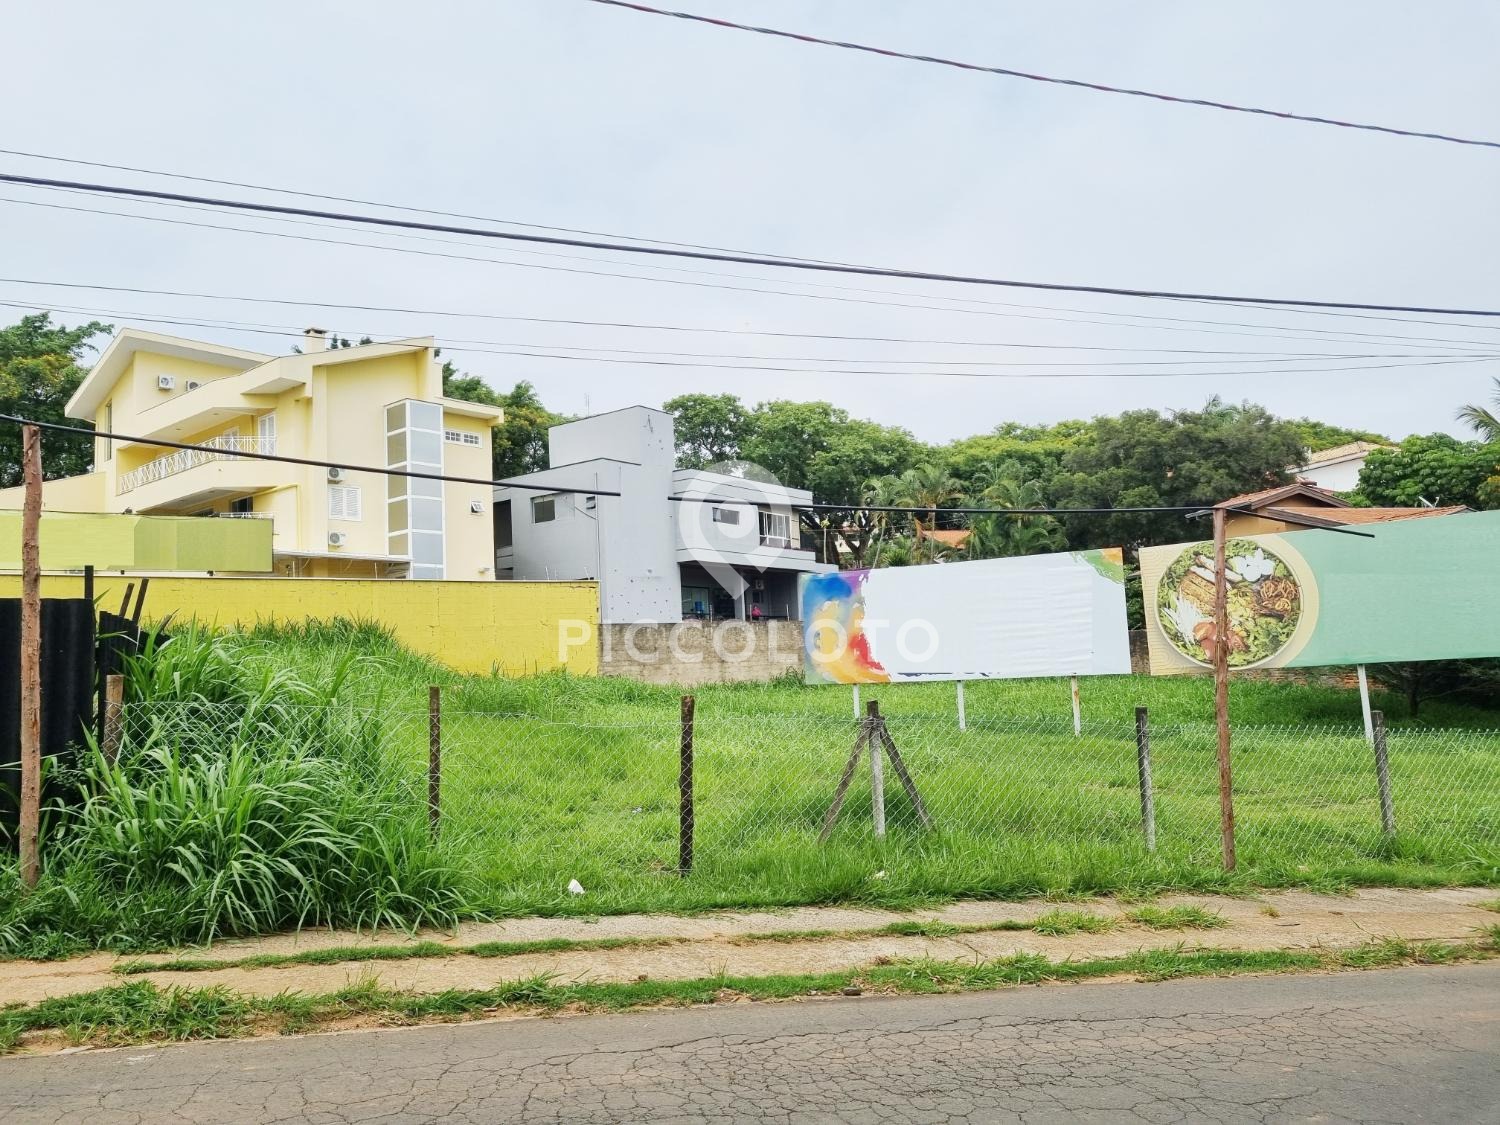 Piccoloto -Terreno para alugar no Bairro das Palmeiras em Campinas